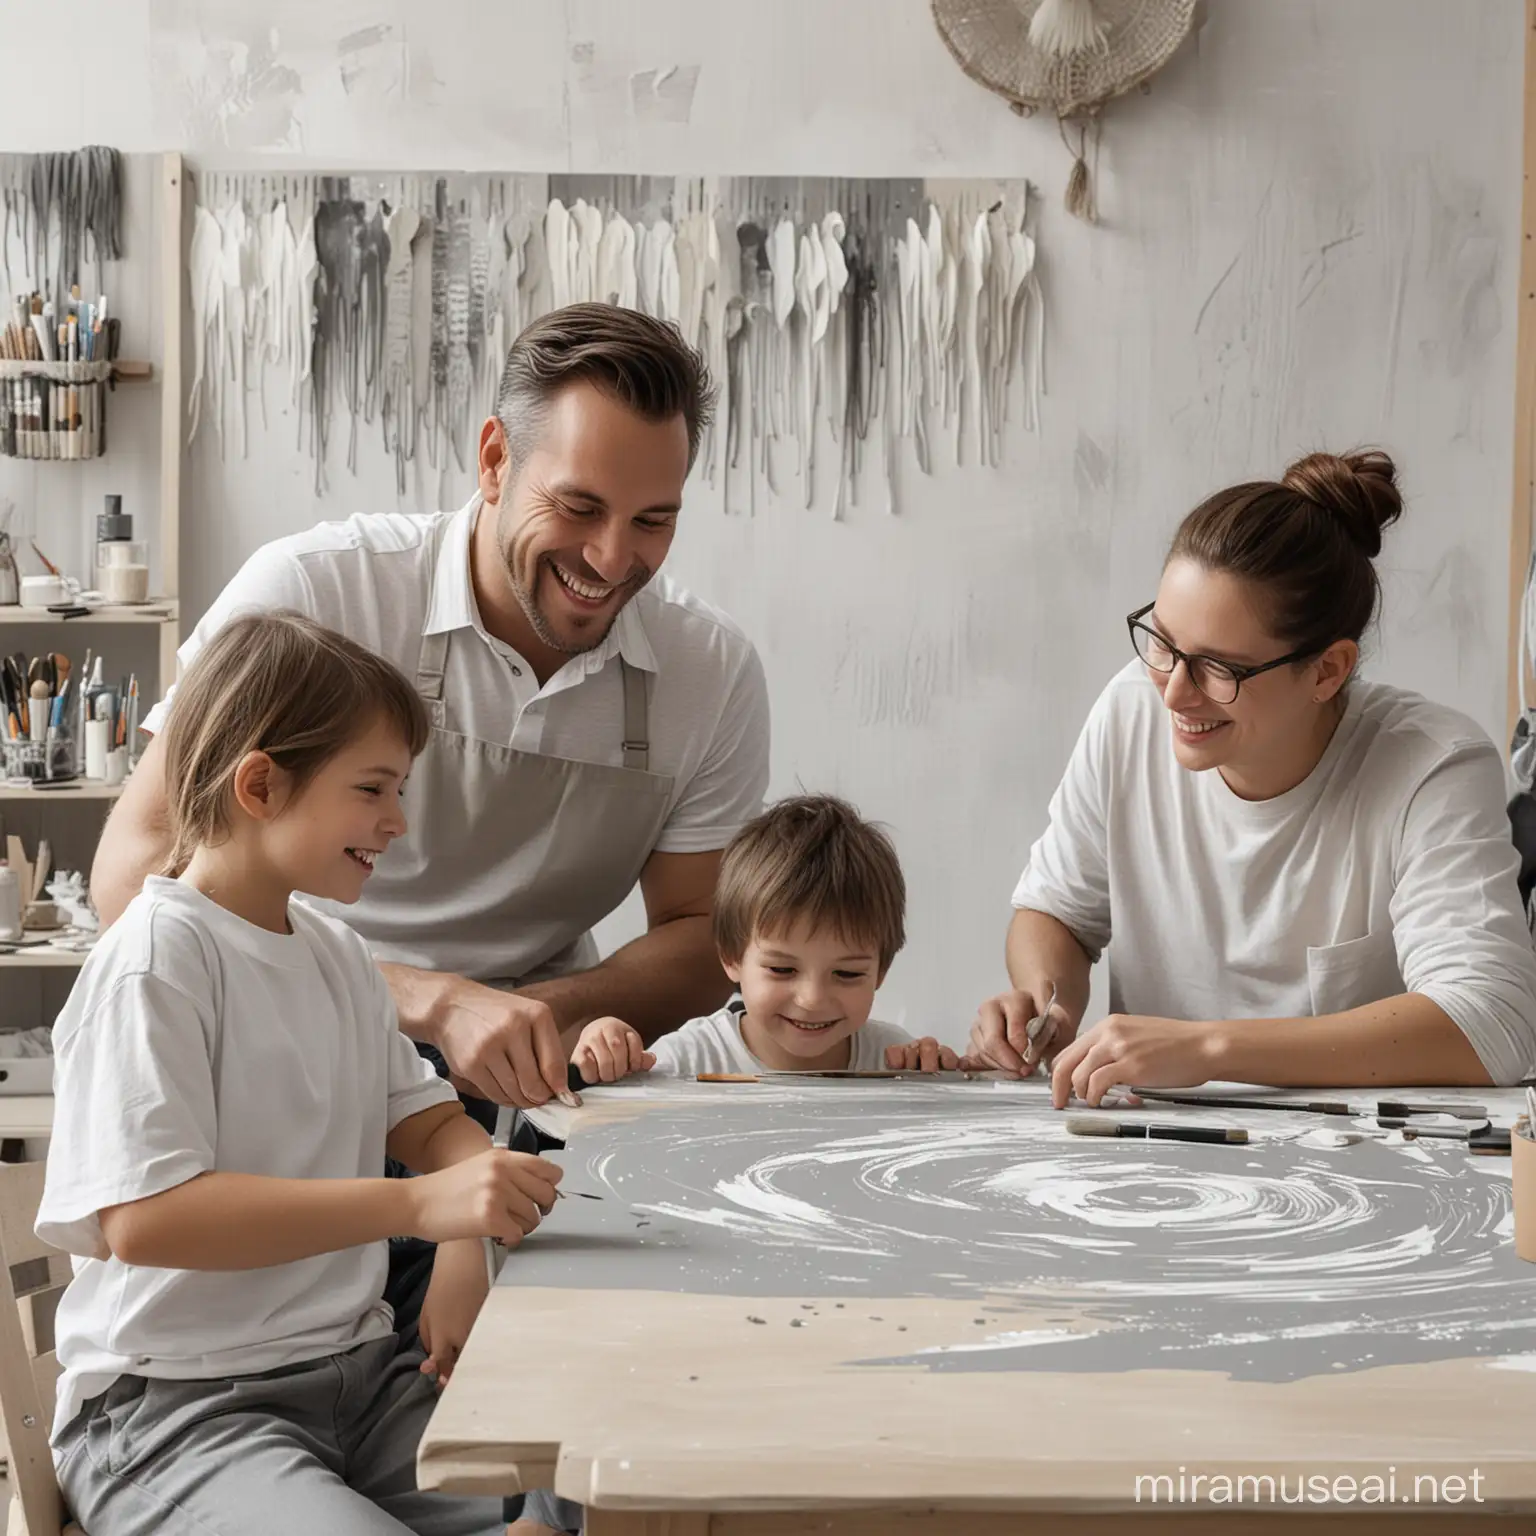  женщина, мужчина и ребенок, художники, сидят за столом с кисточкой и улыбаются. мастерская оформлена в серо-белых тонах